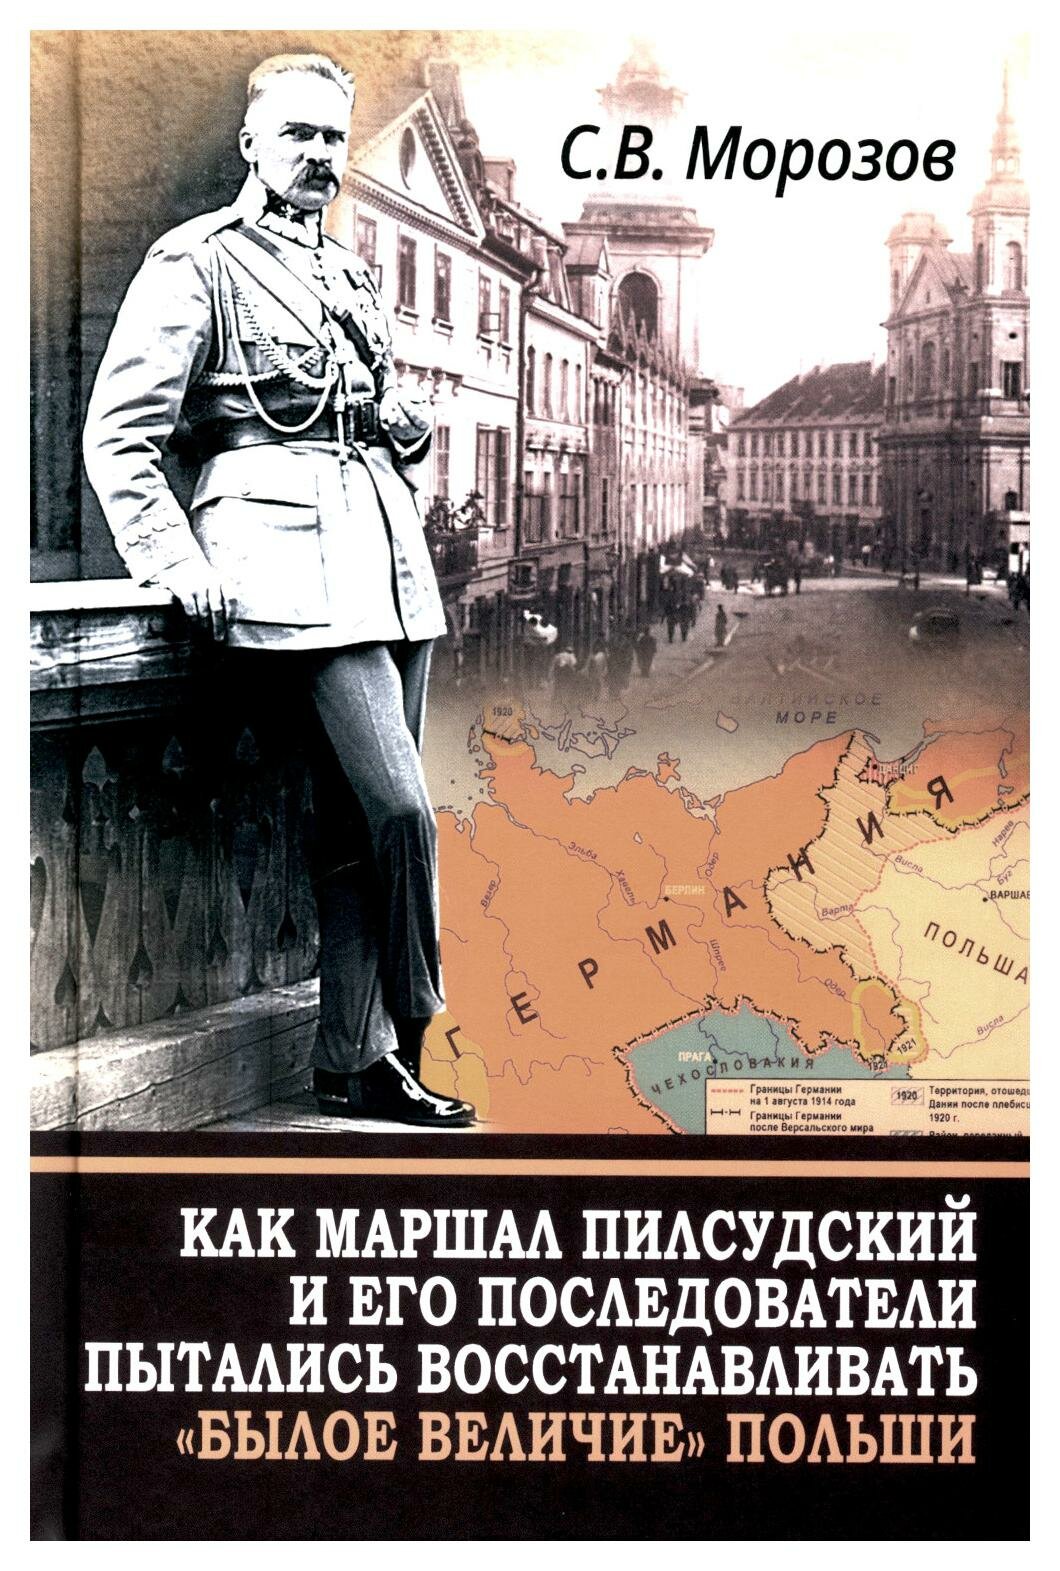 Как маршал Пилсудский и его последователи пытались восстанавливать "былое величие" Польши - фото №1